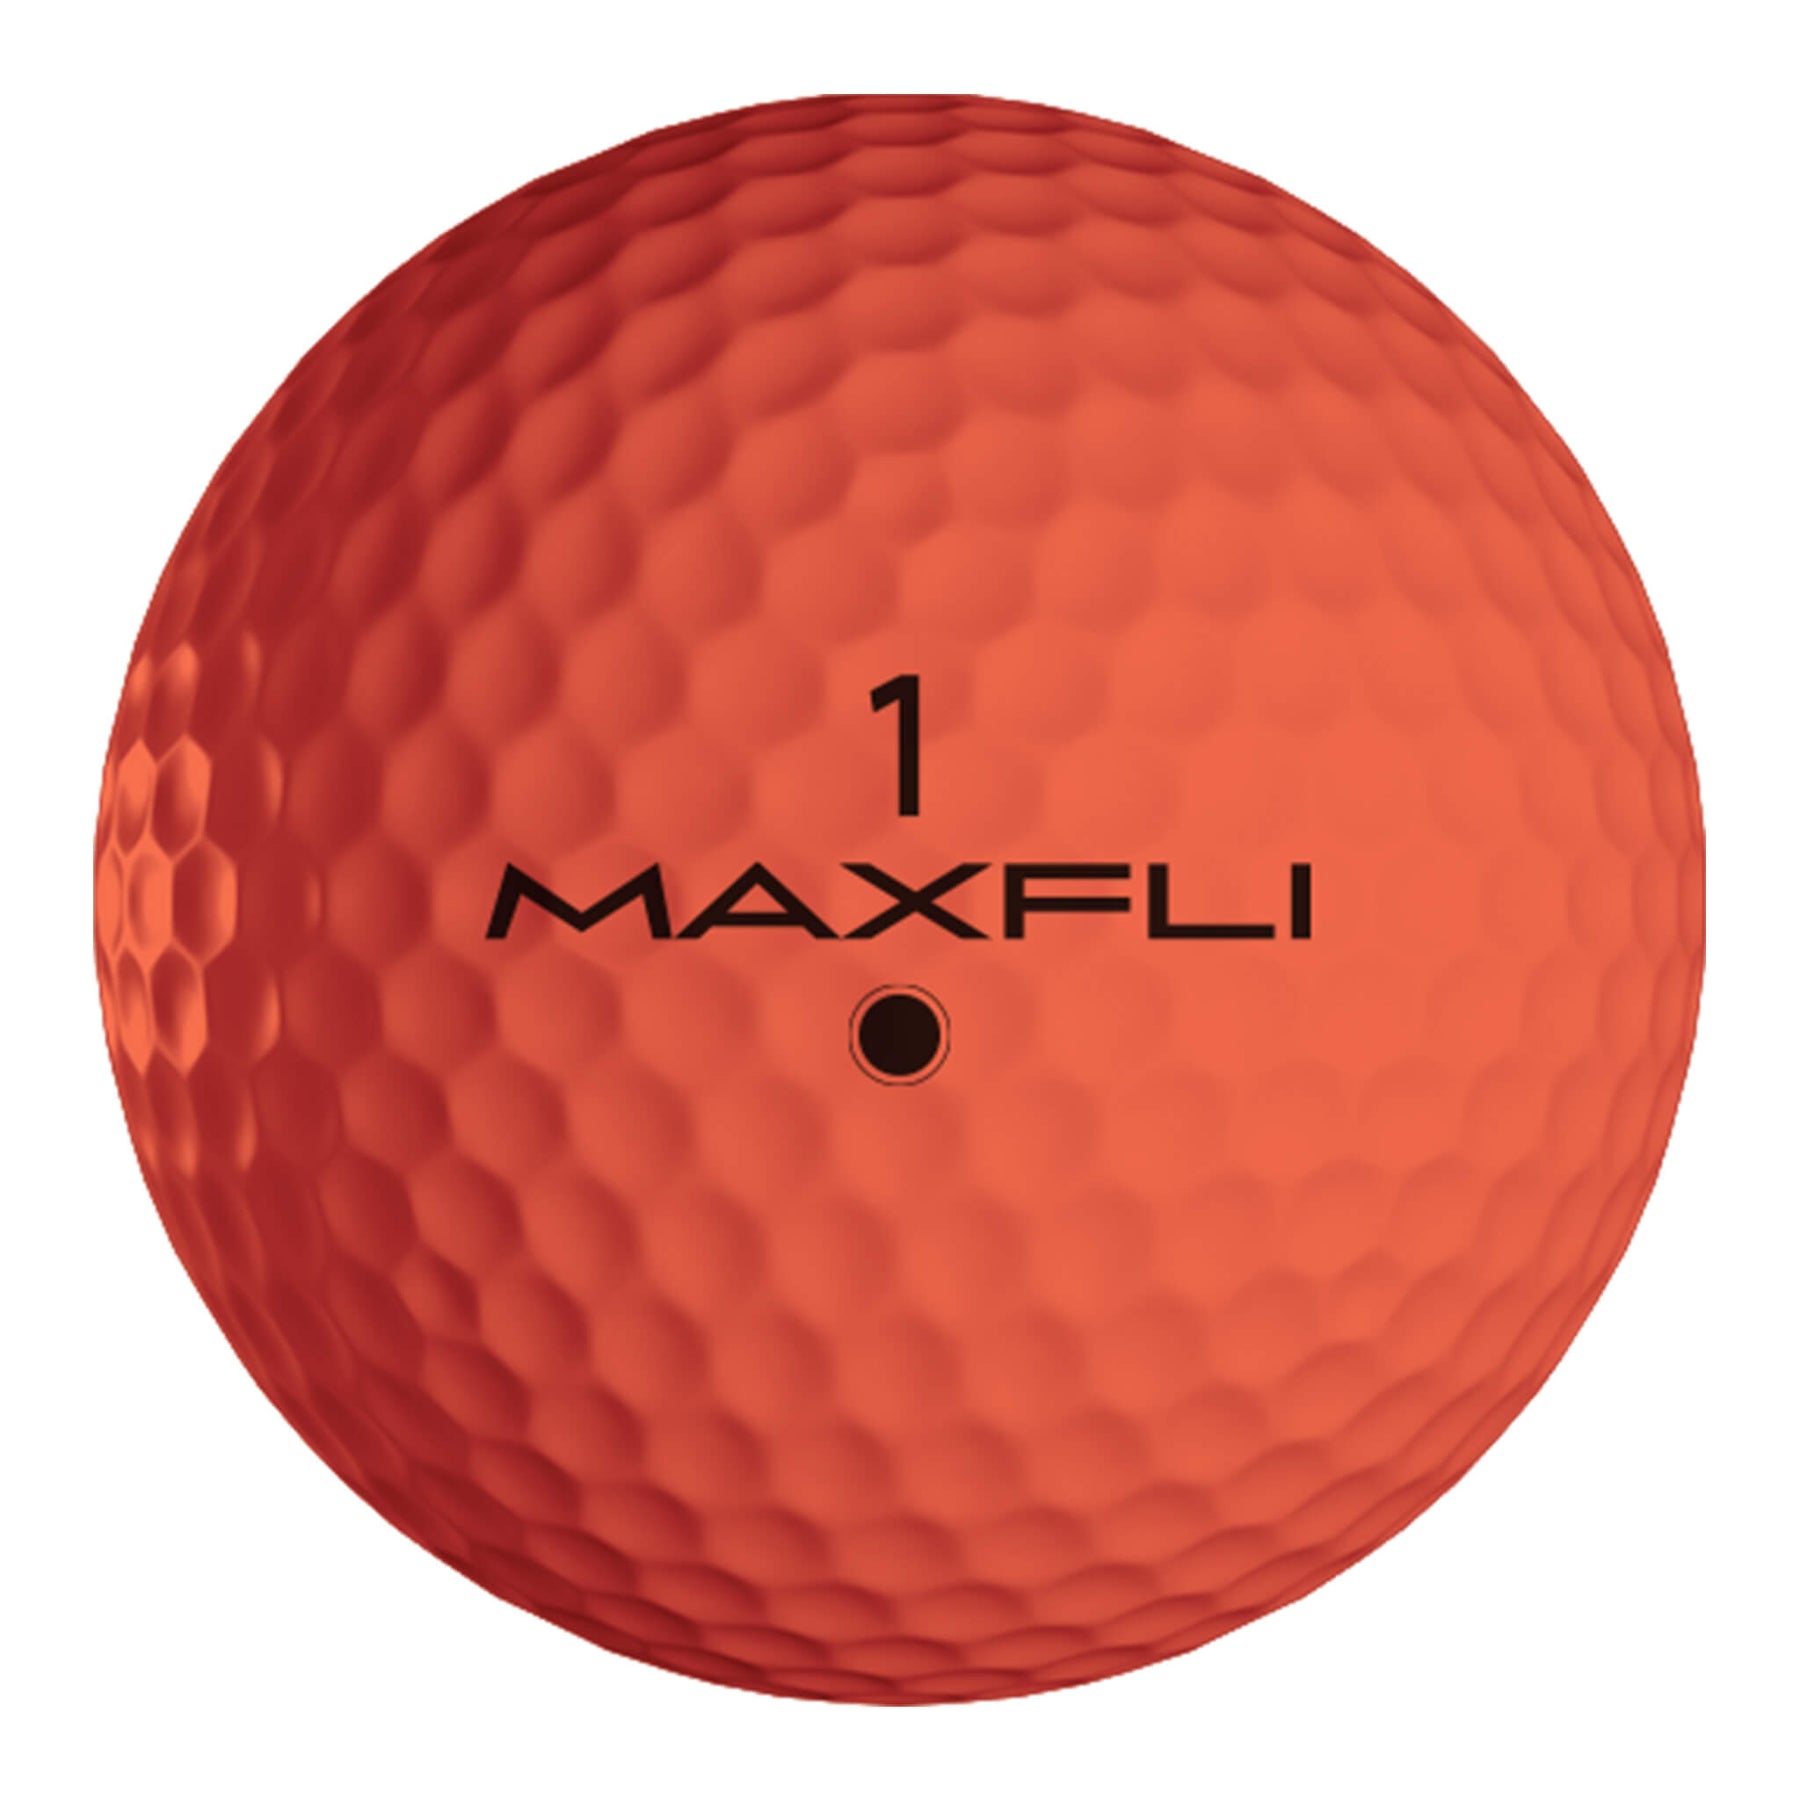 Max-fli Softfli Orange